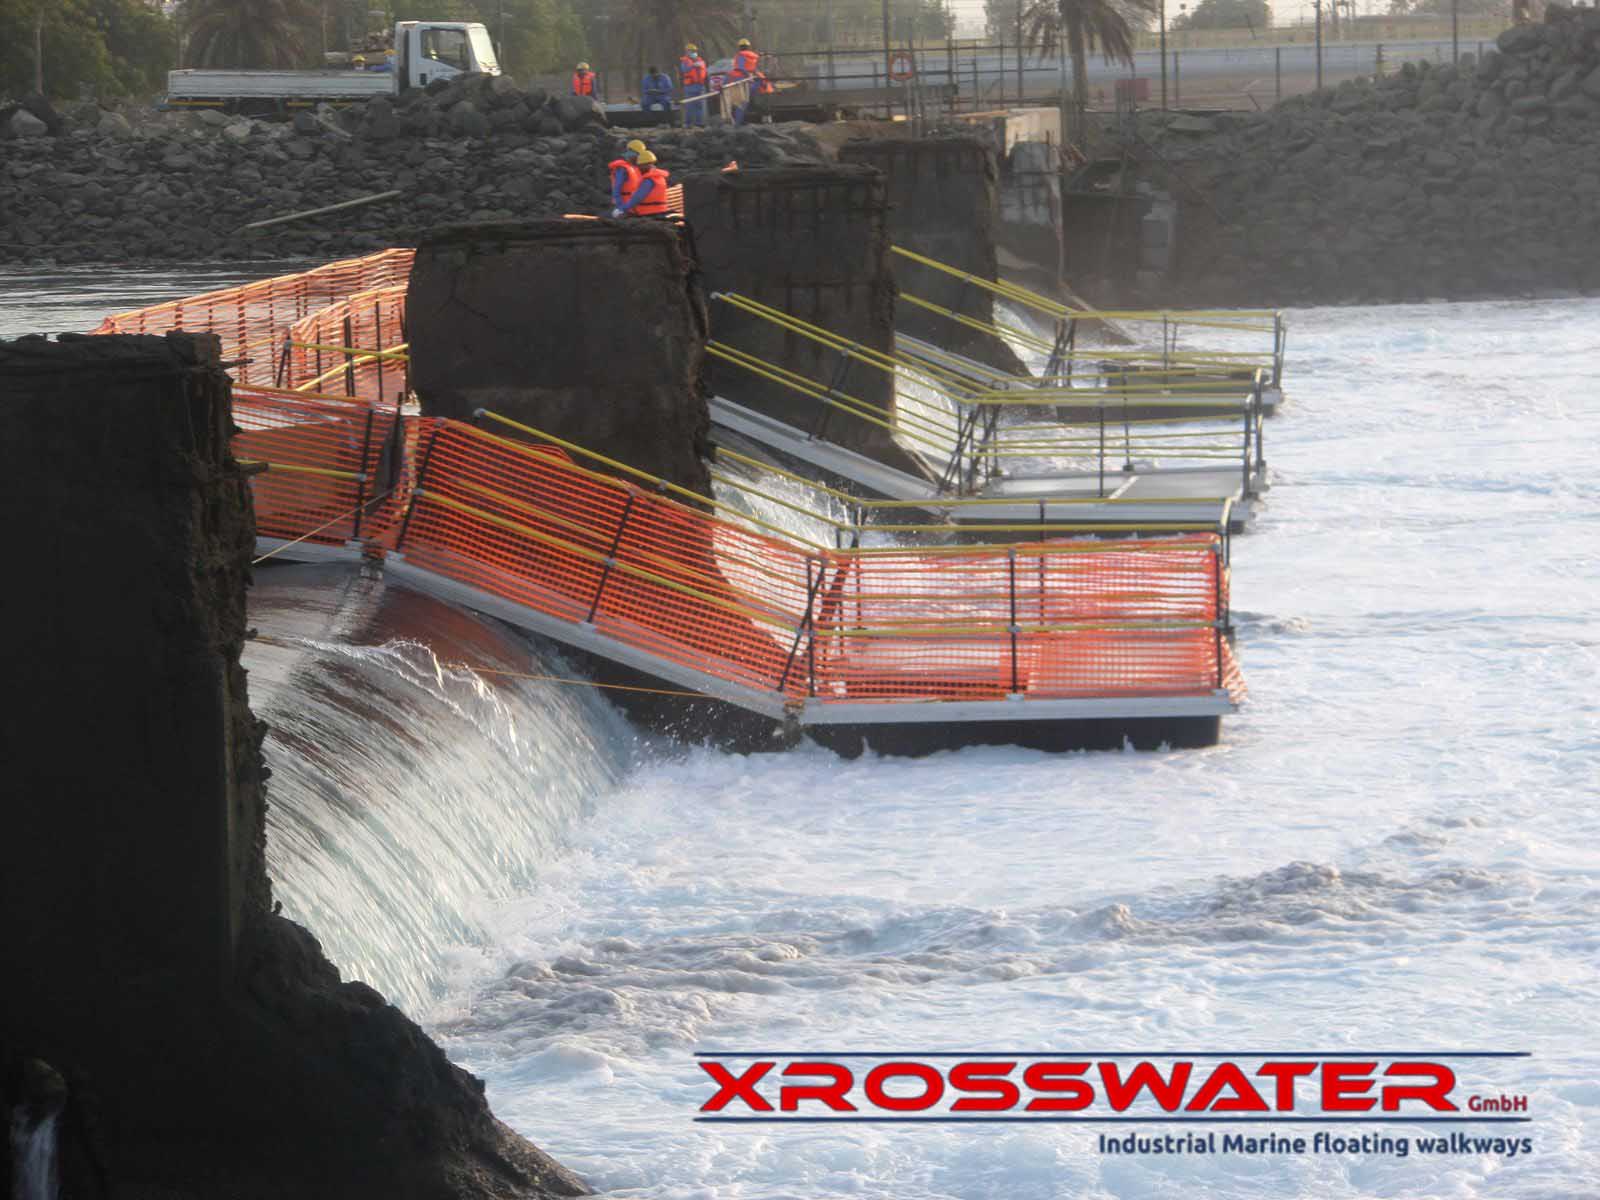 Trabajadores de la hidroeléctrica en las tareas de ingenieria sobre las pasarelas instaladas de Xrosswater